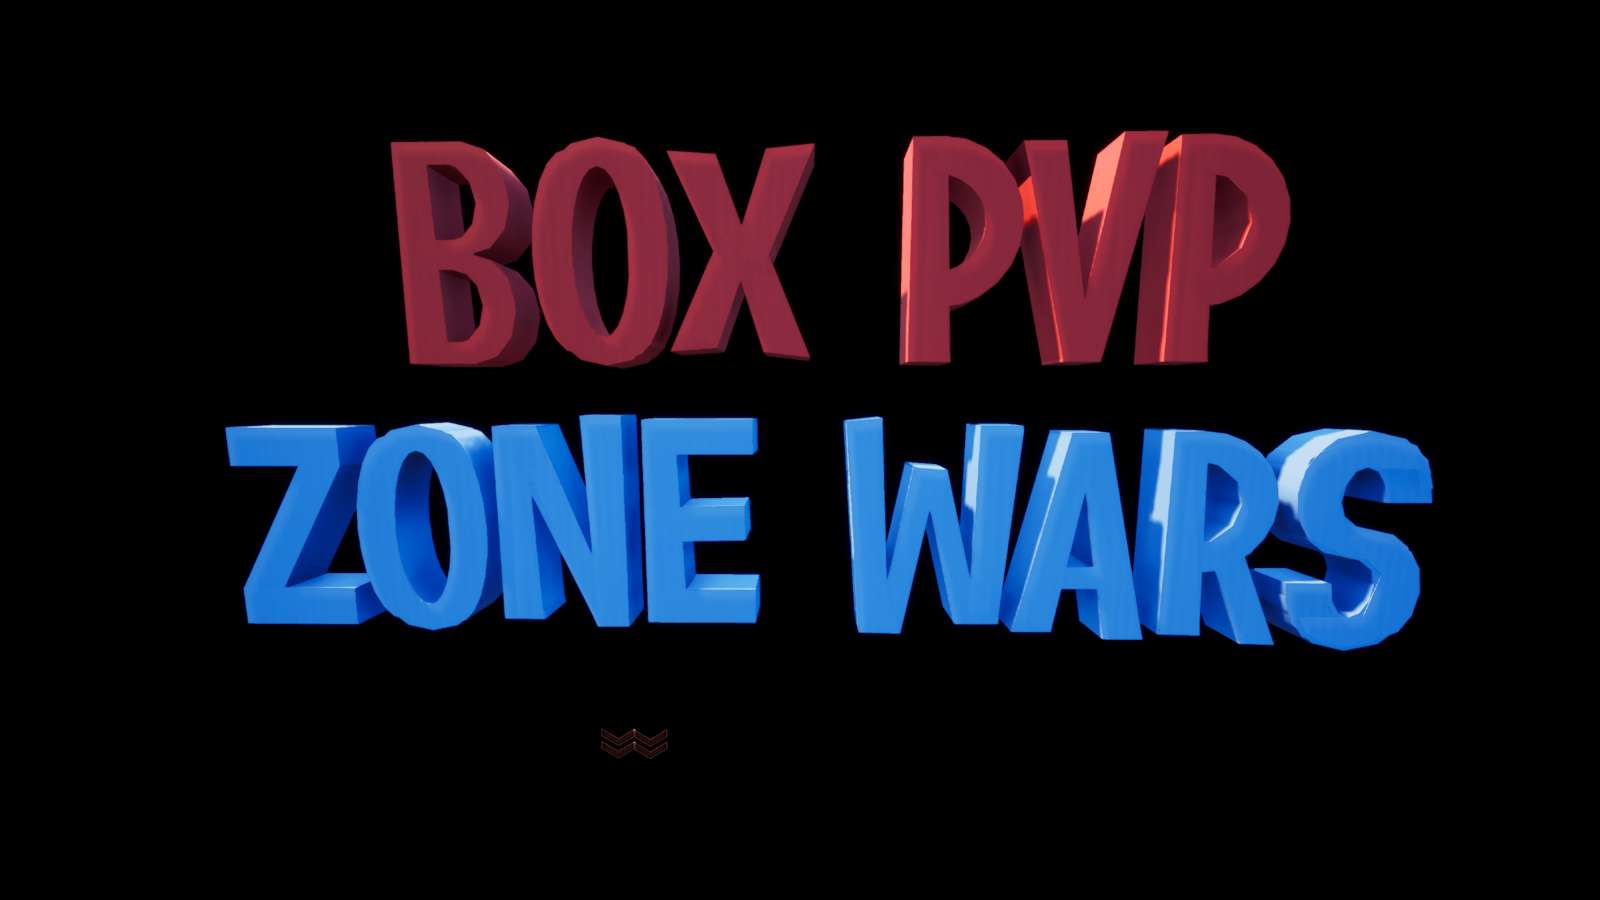 SEASON 8 BOX PVP & ZONE WAR